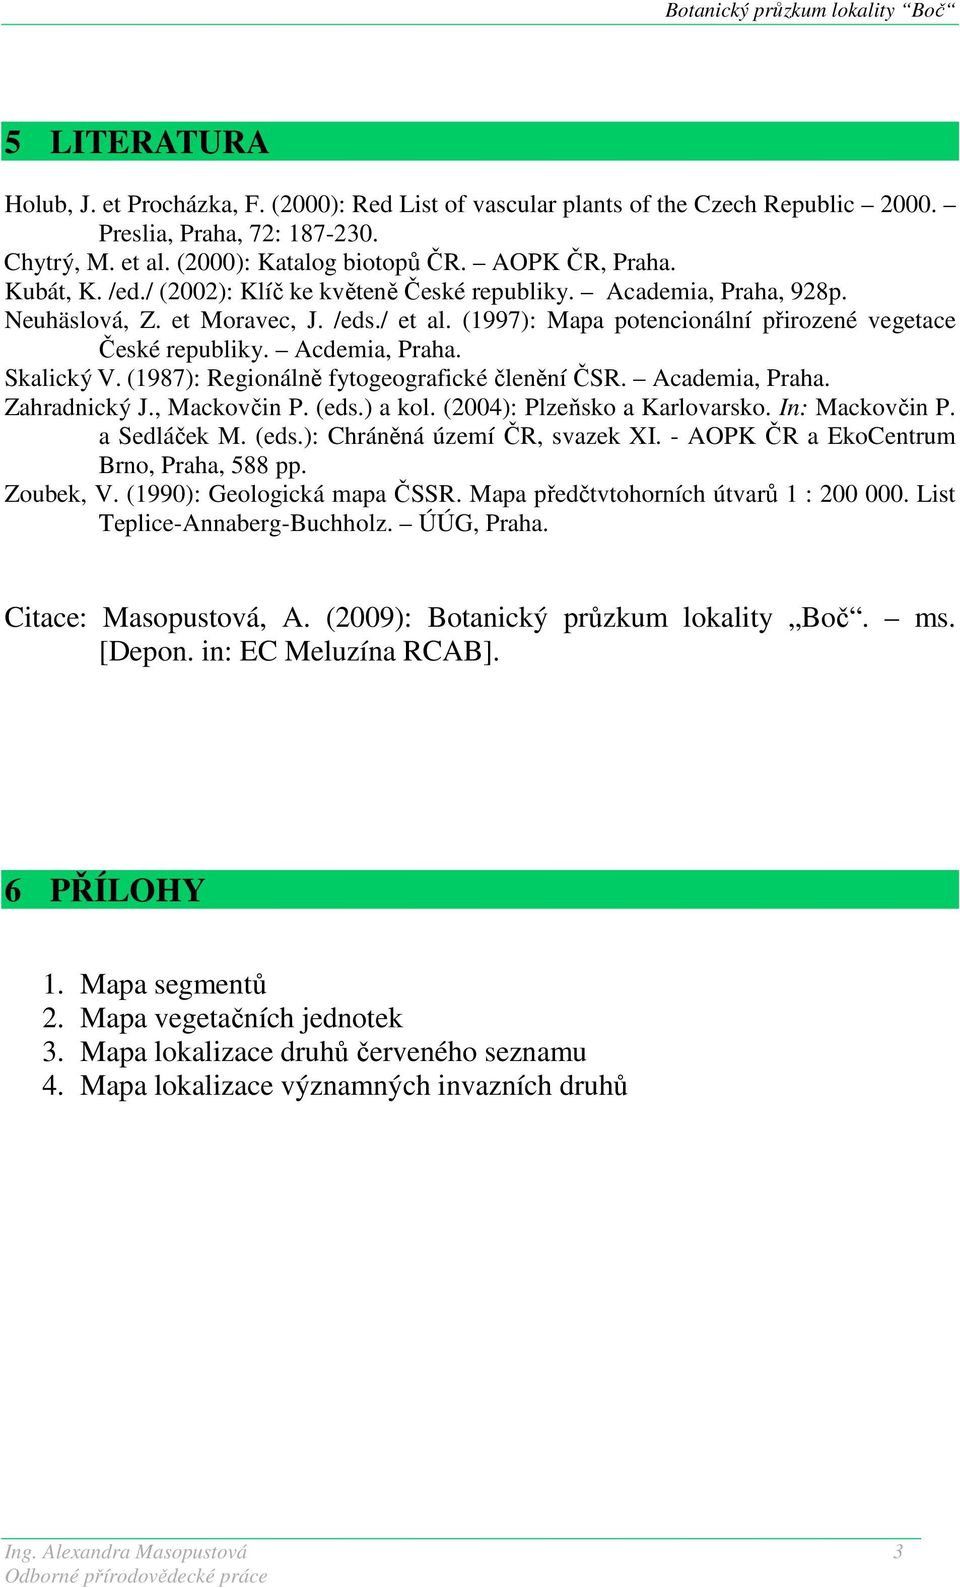 Acdemia, Praha. Skalický V. (1987): Regionálně fytogeografické členění ČSR. Academia, Praha. Zahradnický J., Mackovčin P. (eds.) a kol. (2004): Plzeňsko a Karlovarsko. In: Mackovčin P. a Sedláček M.